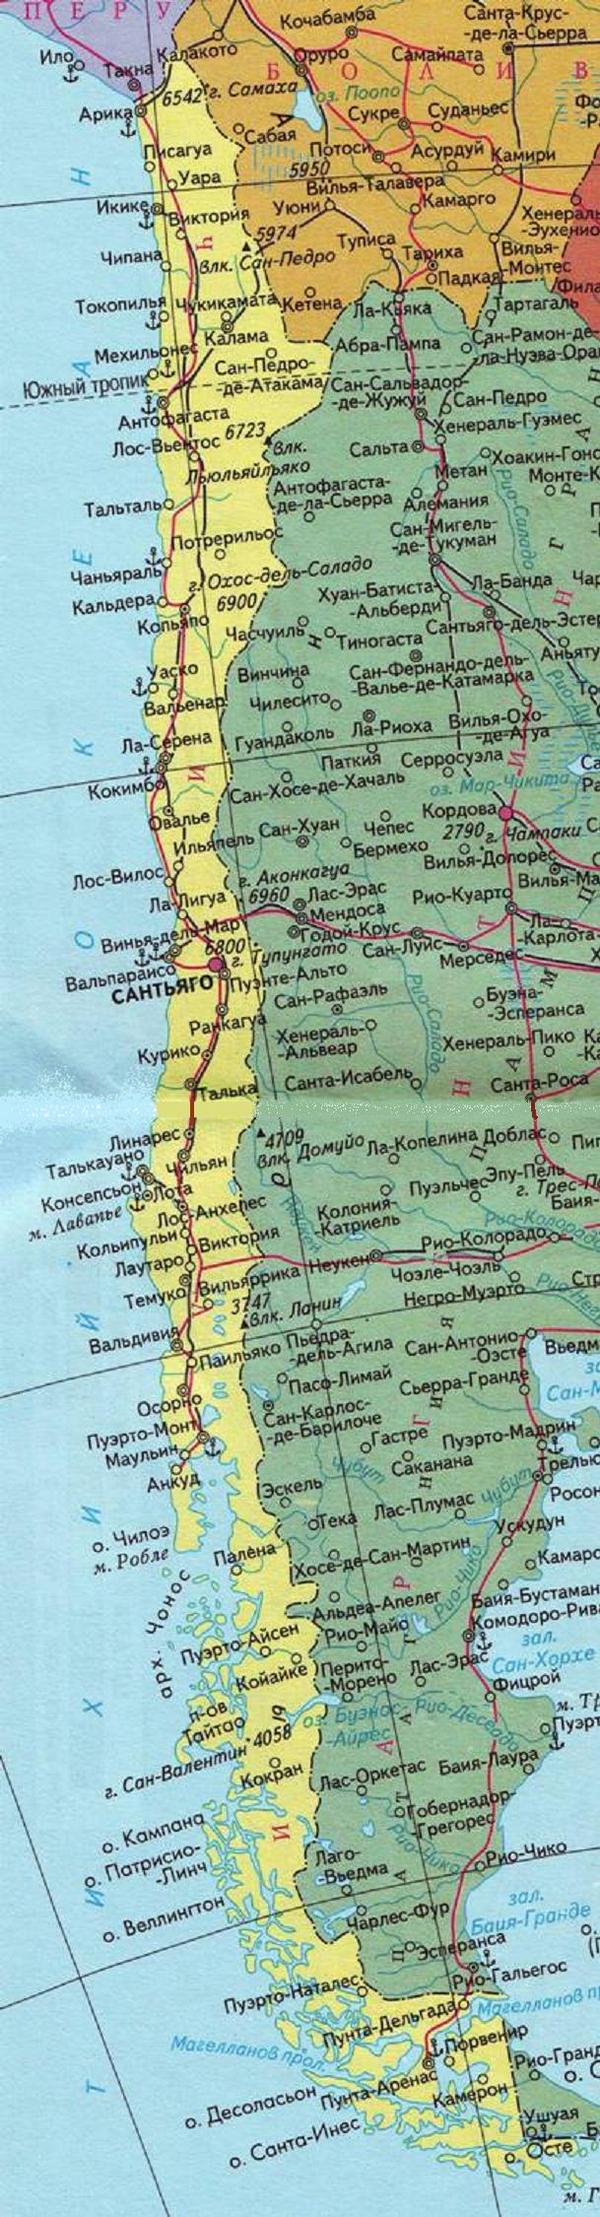 Чили - карта страны